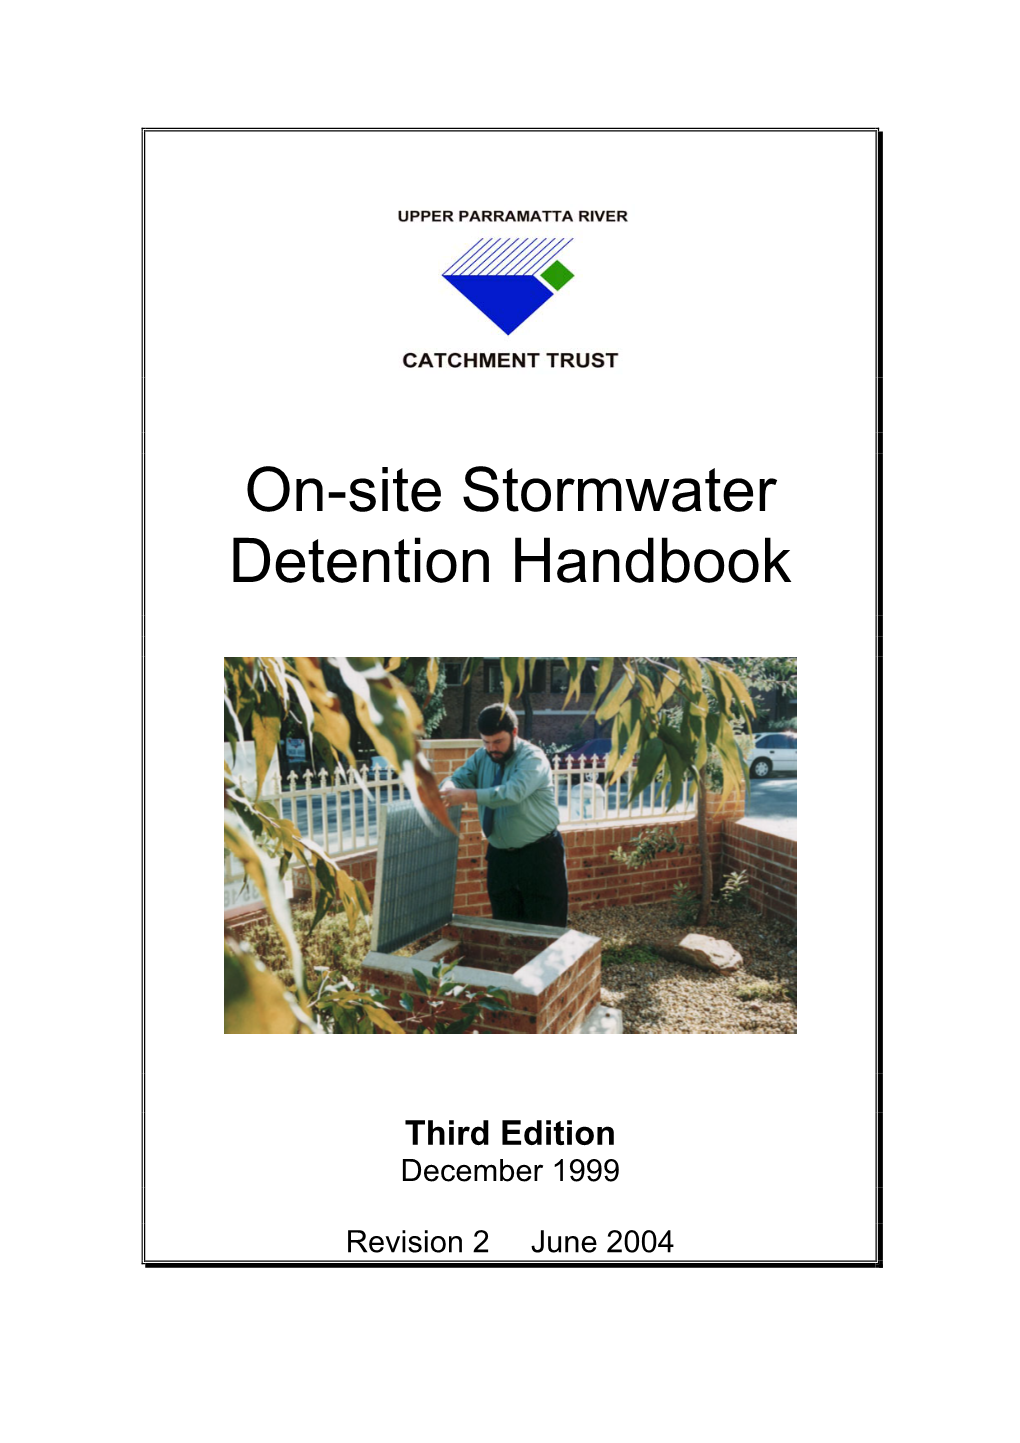 Upper-Parramatta-River-Catchment-Trust-On-Site-Stormwater-Detention-Handbook-Third